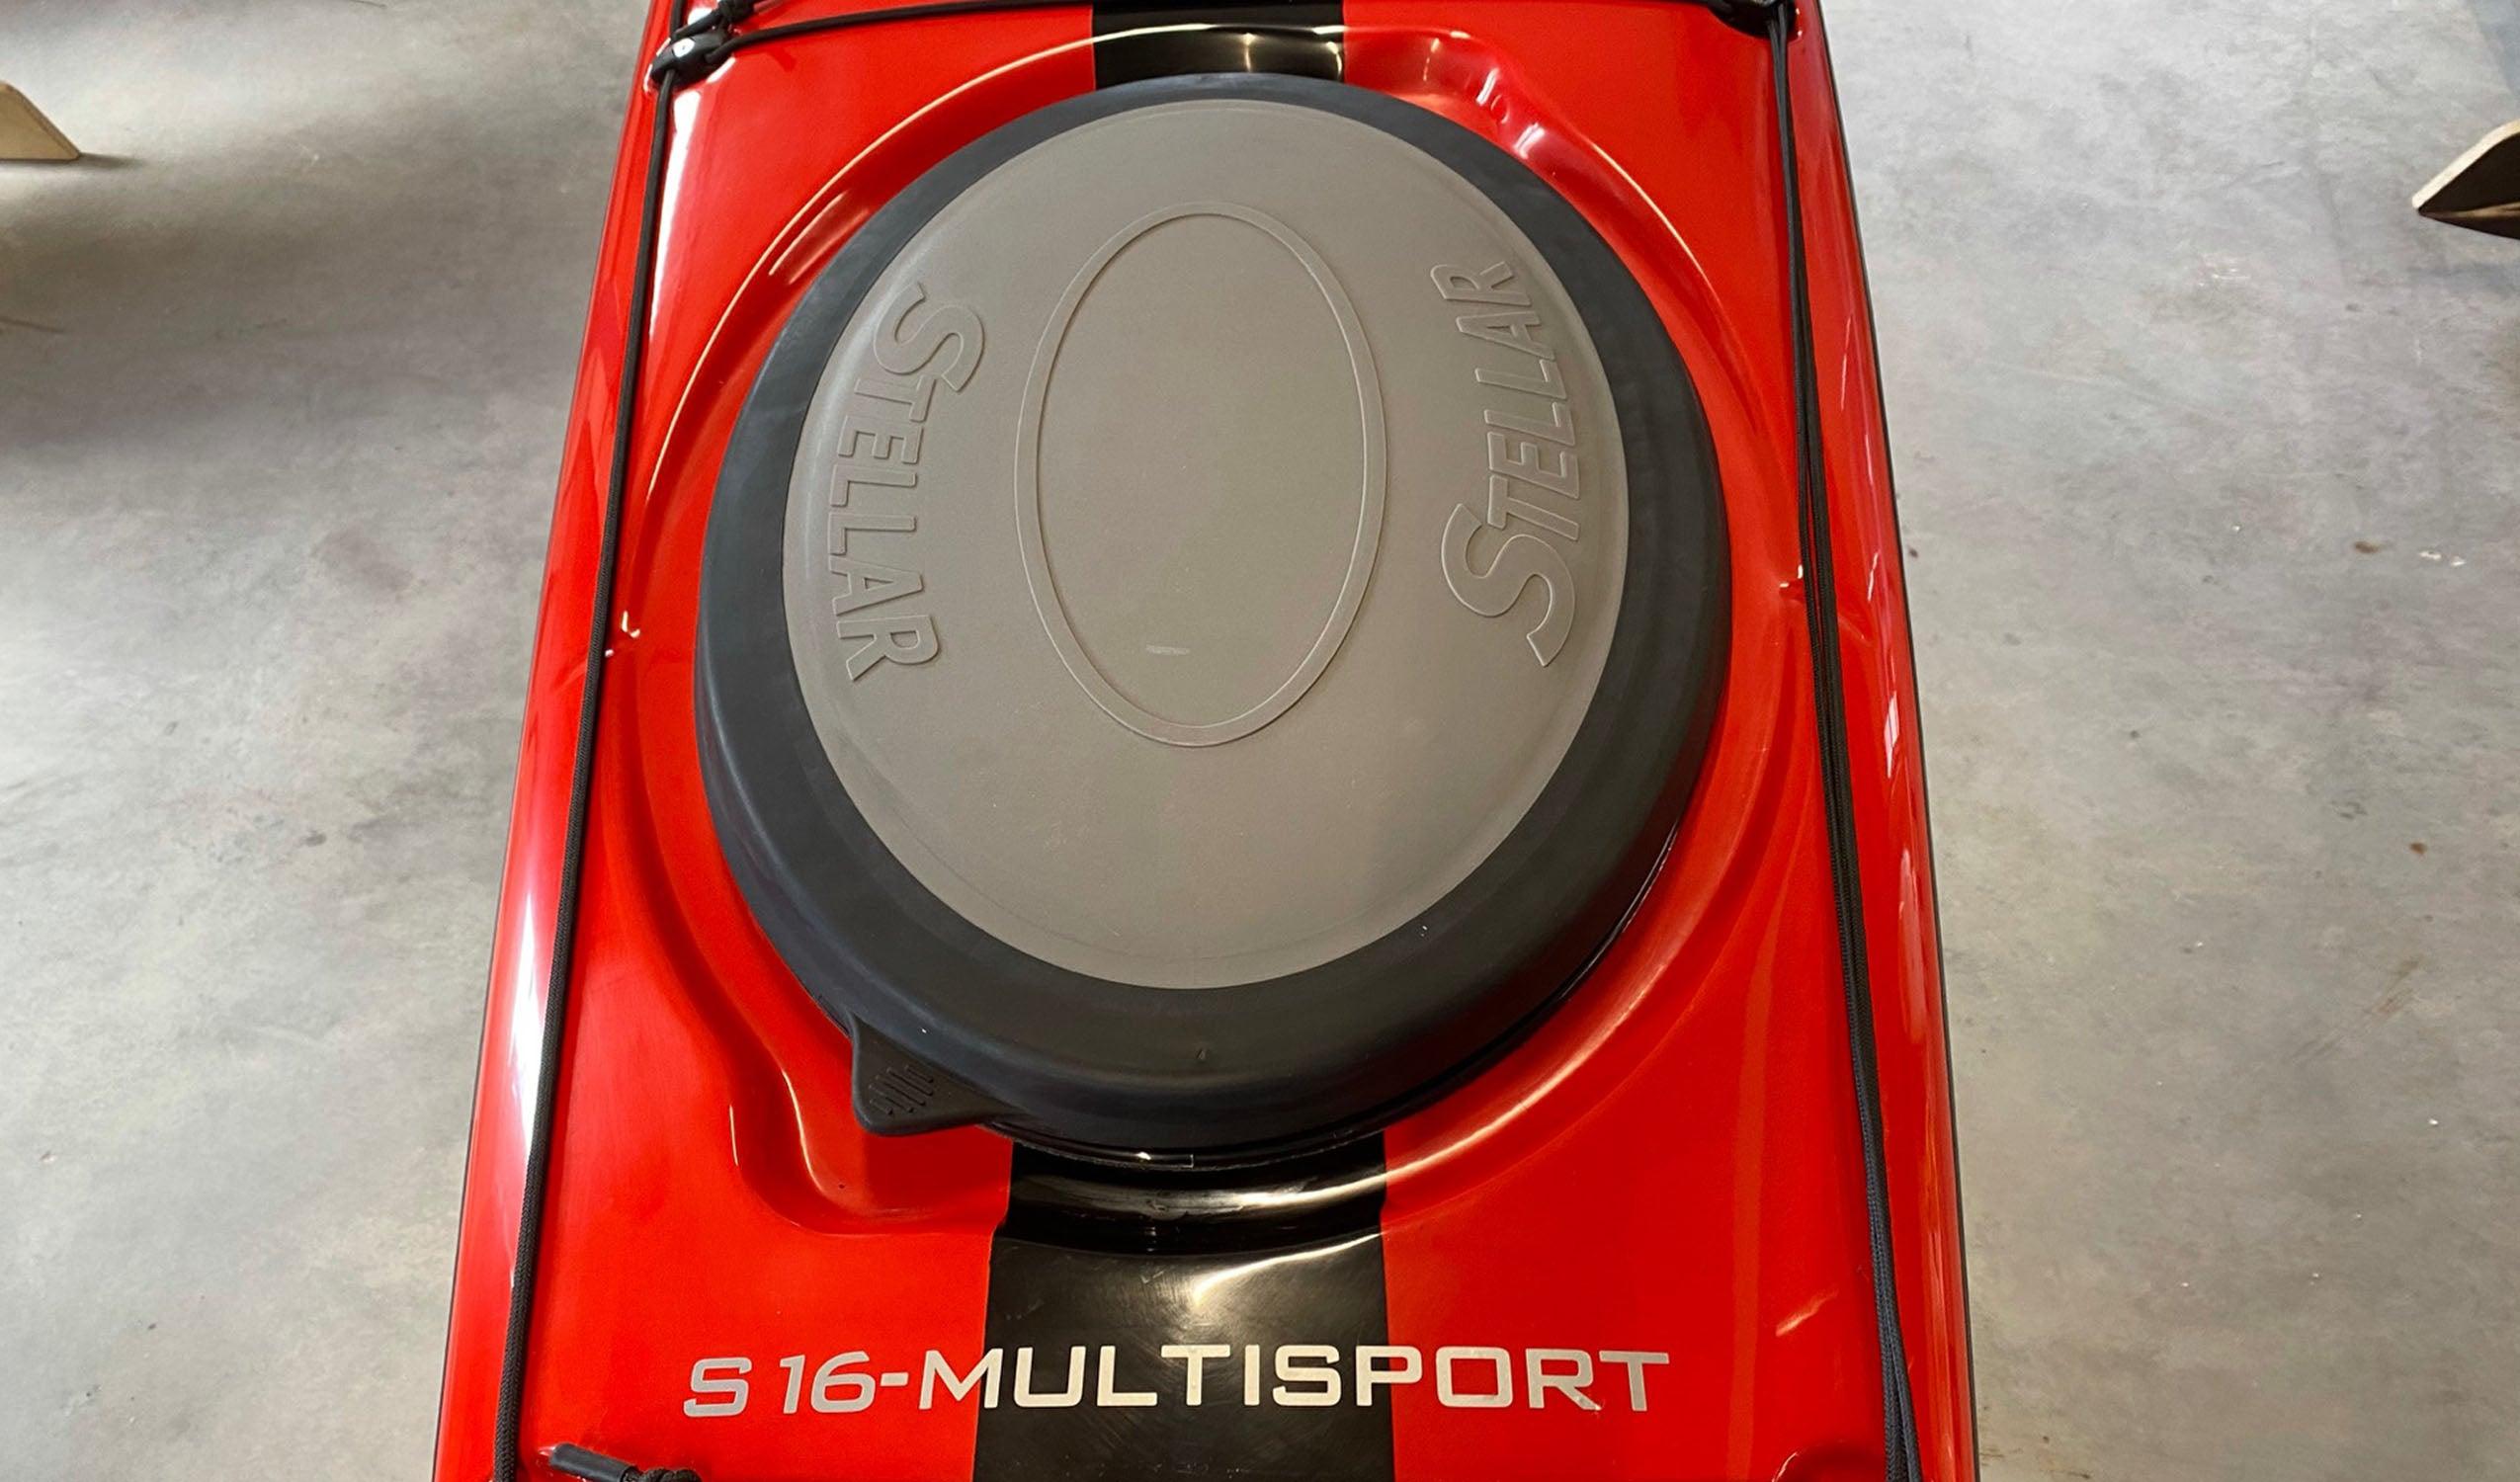 Produktbild von Kajak " S16 G2 Multisport-rot schwarz " der Marke STELLAR Lightweight für 3190.00 €. Erhältlich online bei Lite Venture ( www.liteventure.de )